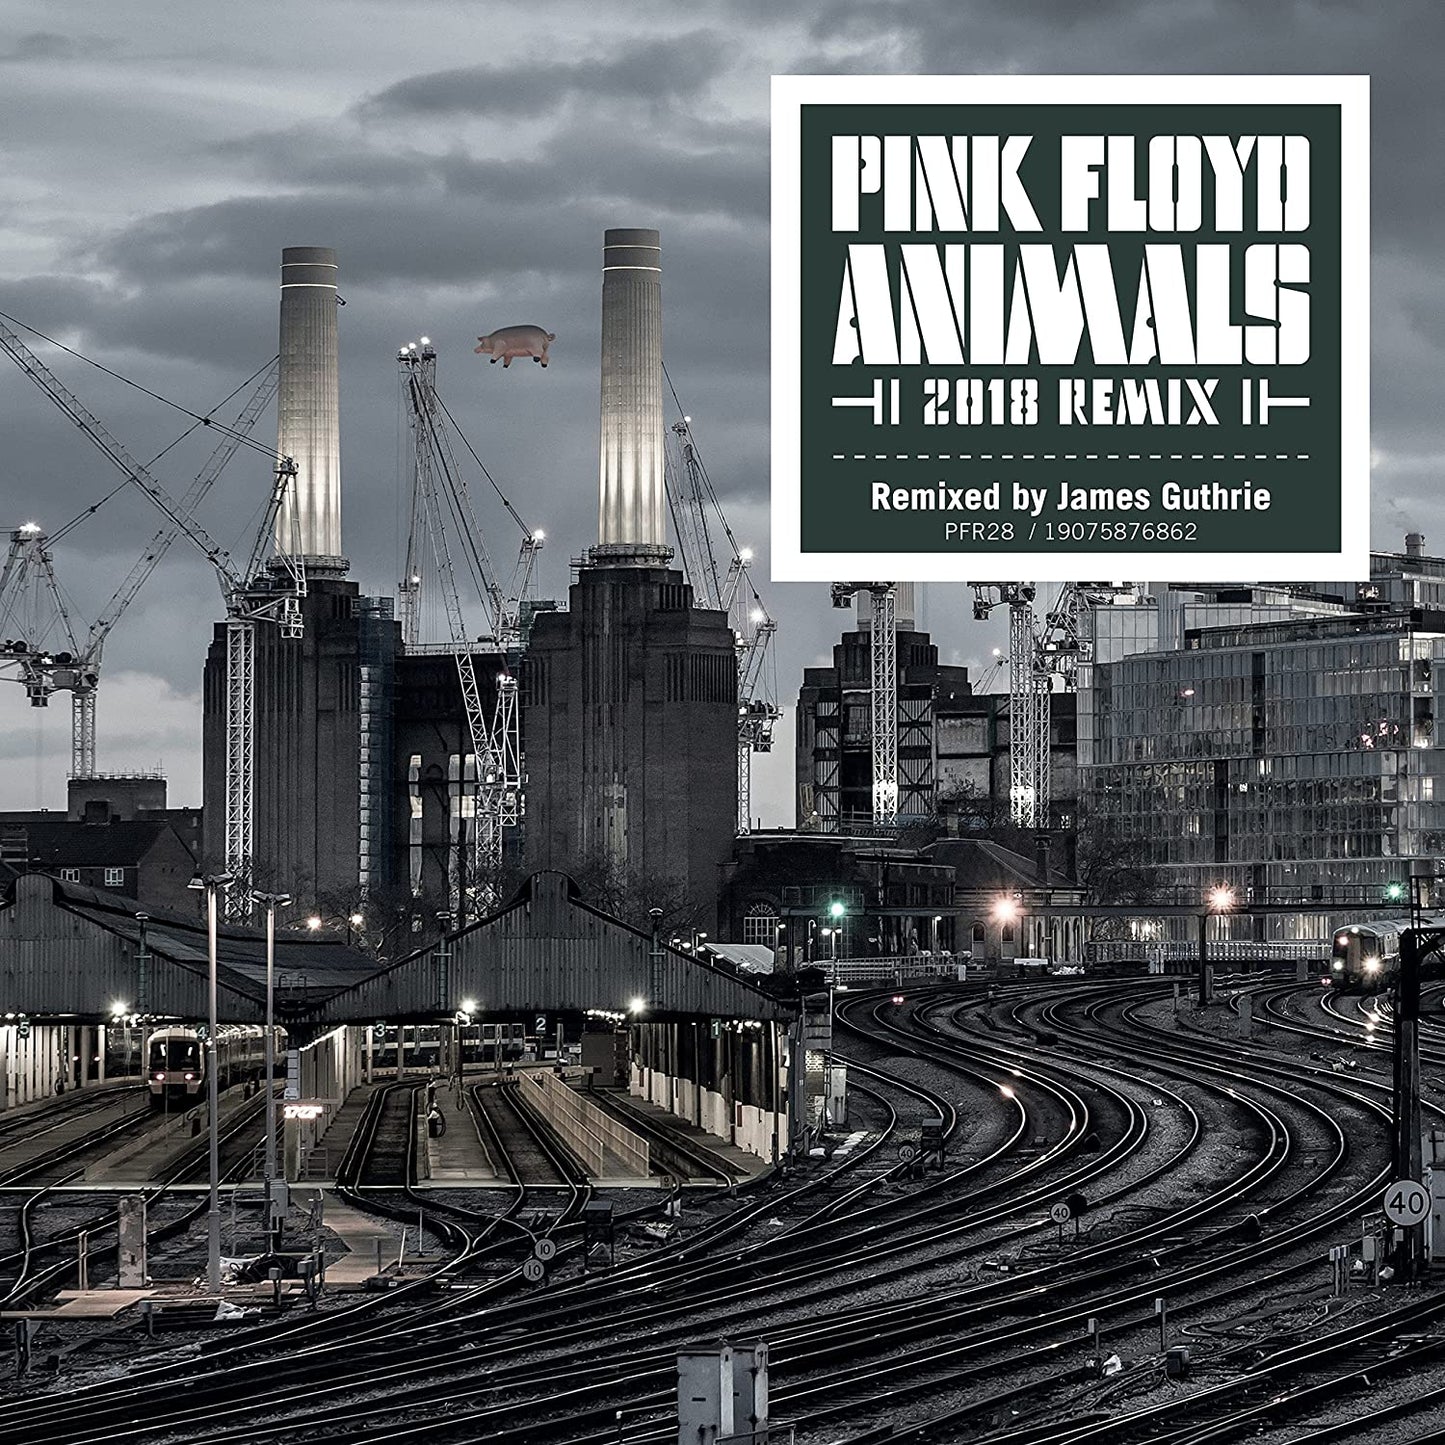 Pink Floyd — Animals [2018 Remix]